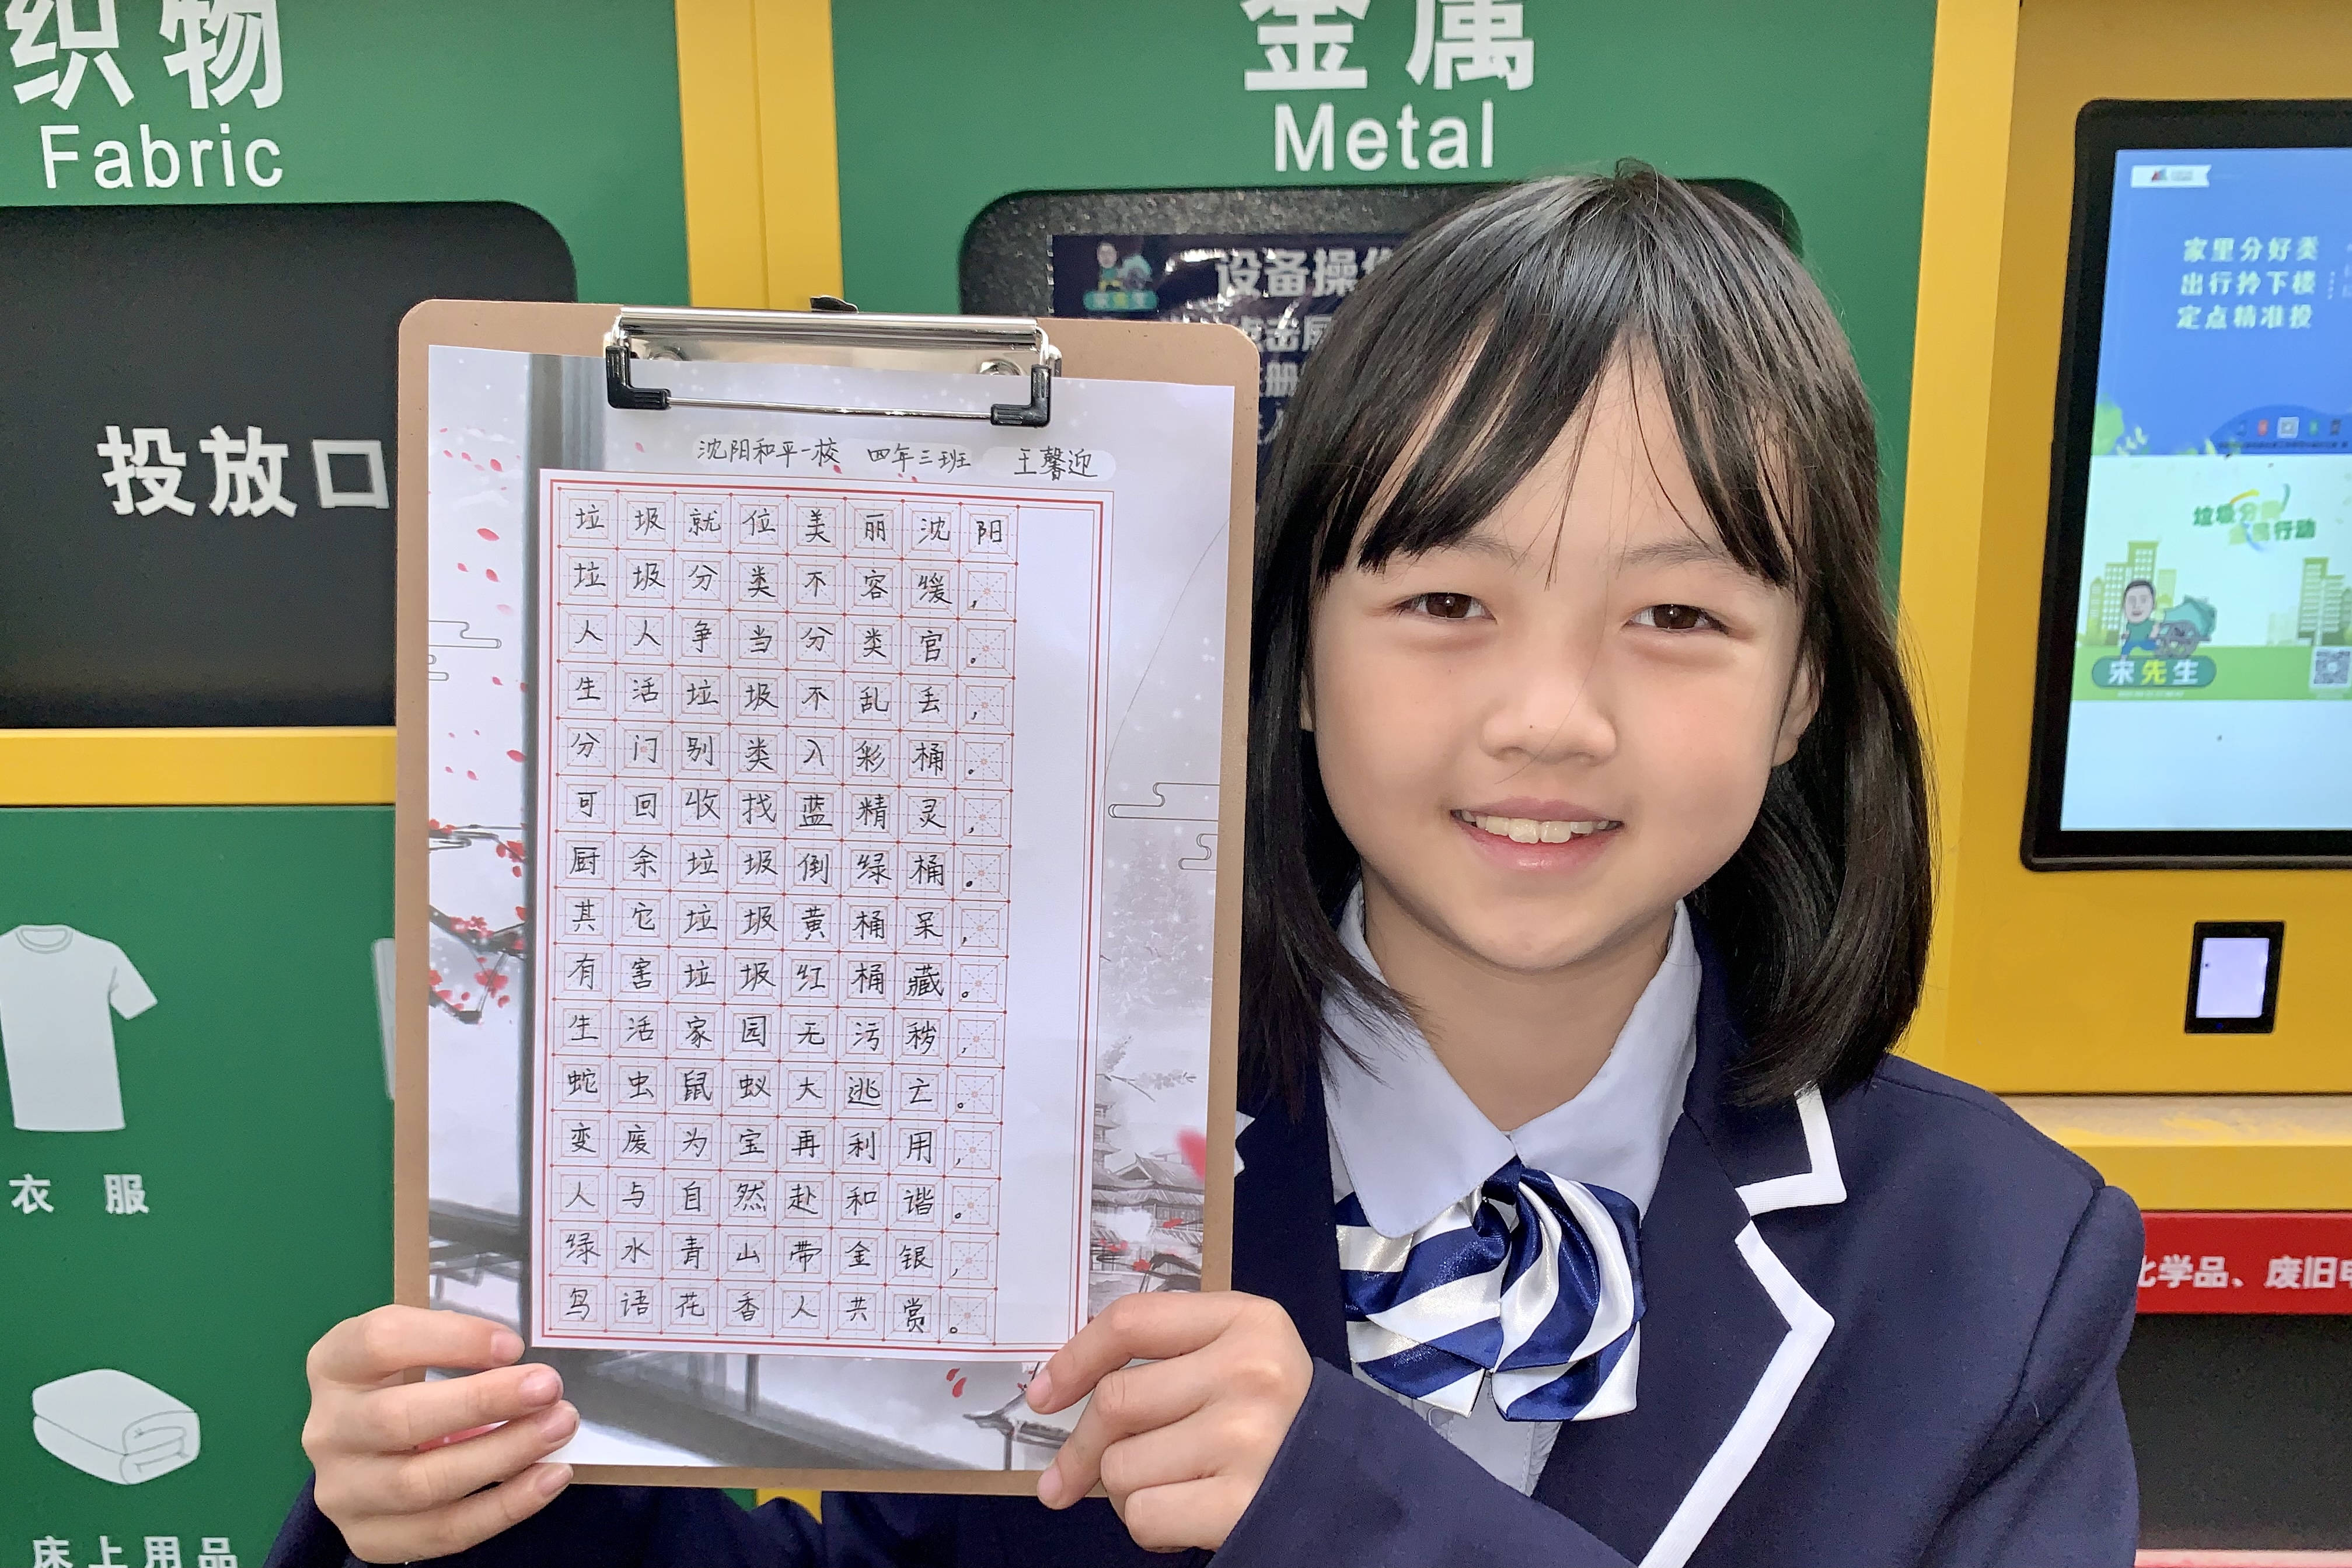 沈阳小学生用书法作品响应垃圾分类倡议